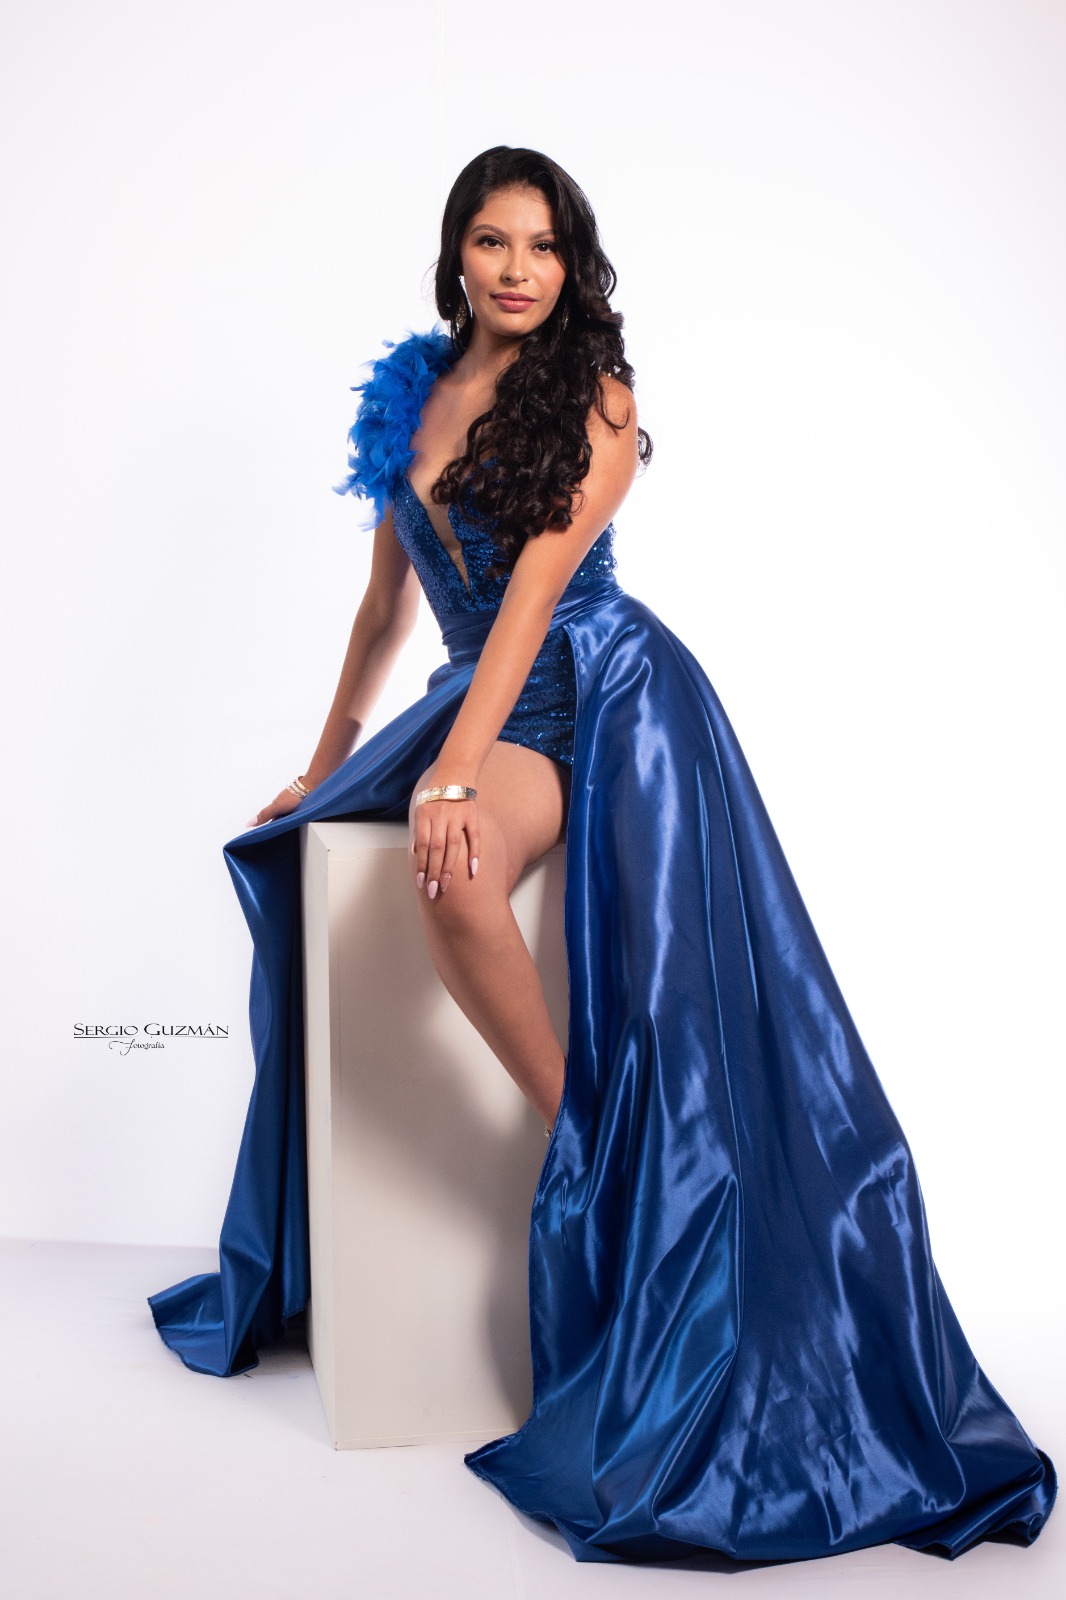 Miss Trifinio Mundo Internacional celebrará sus 25 años de exaltar la belleza